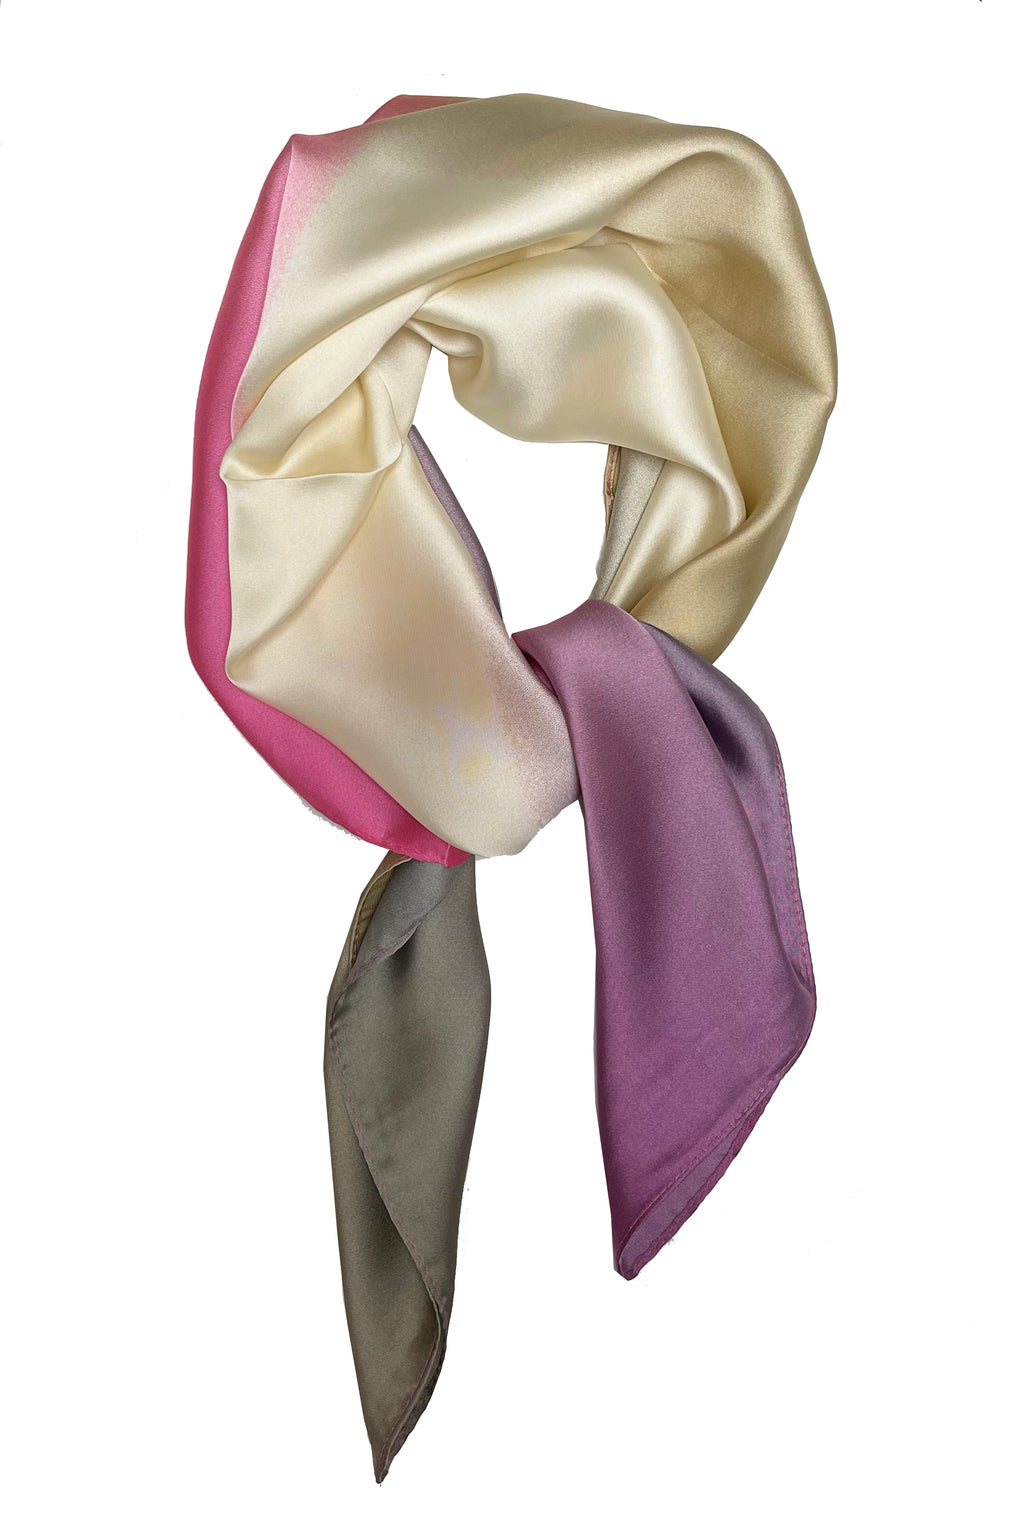 70 cm x 70 cm rose, crème, lilas cravate colorant imprimé motif carré écharpe grandes dames femmes fausse soie tête cou mince breloque pour sac